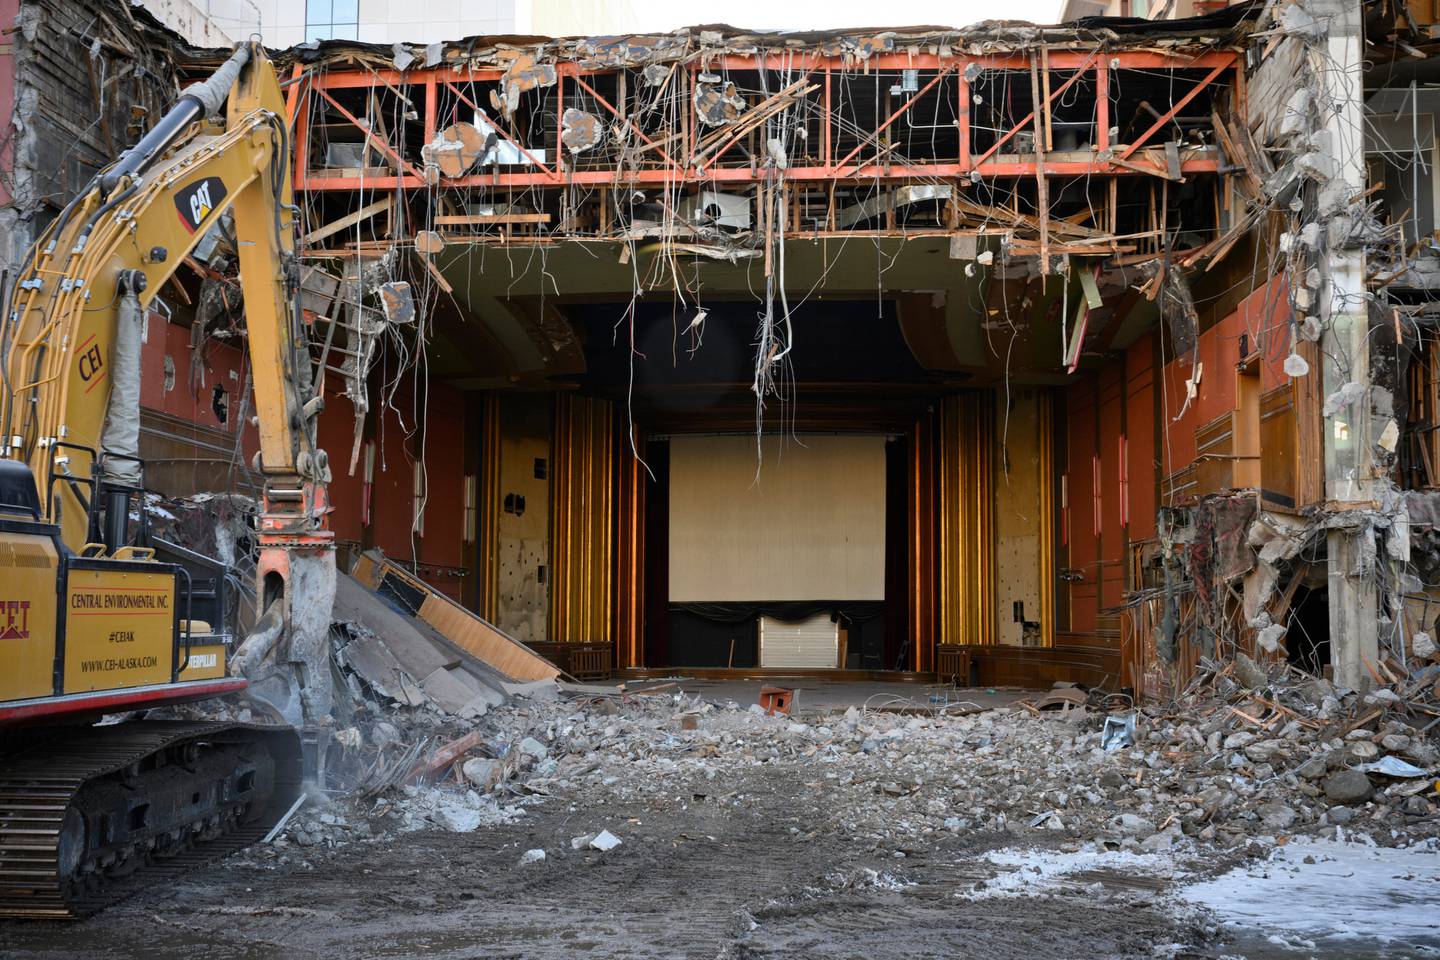 4th Avenue Theatre, demolition